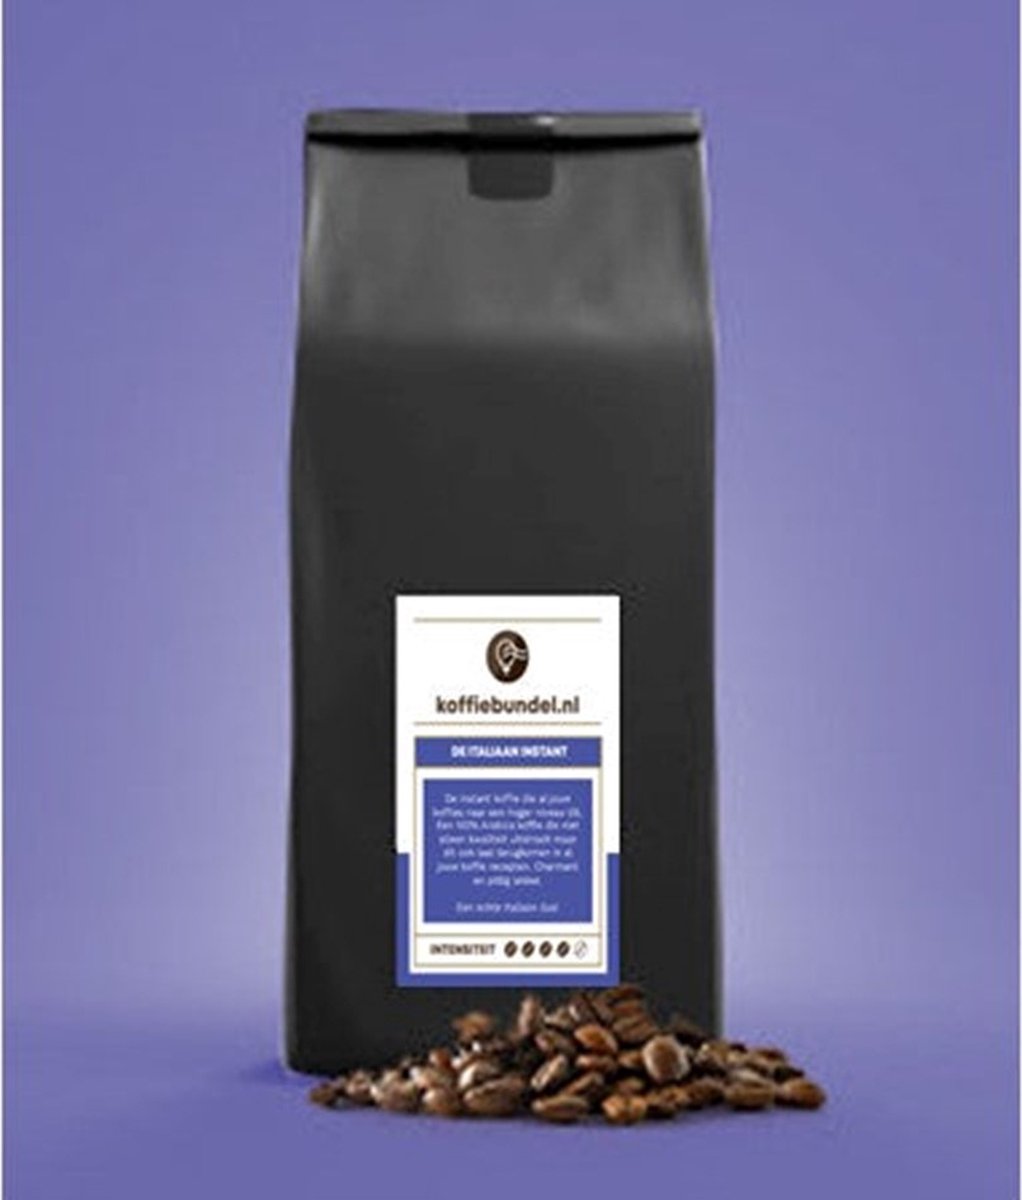 Koffiebundel -100% Arabica professionele instant koffie - De Italiaan - 500 gram, goed voor zo'n 330 koppen koffie!